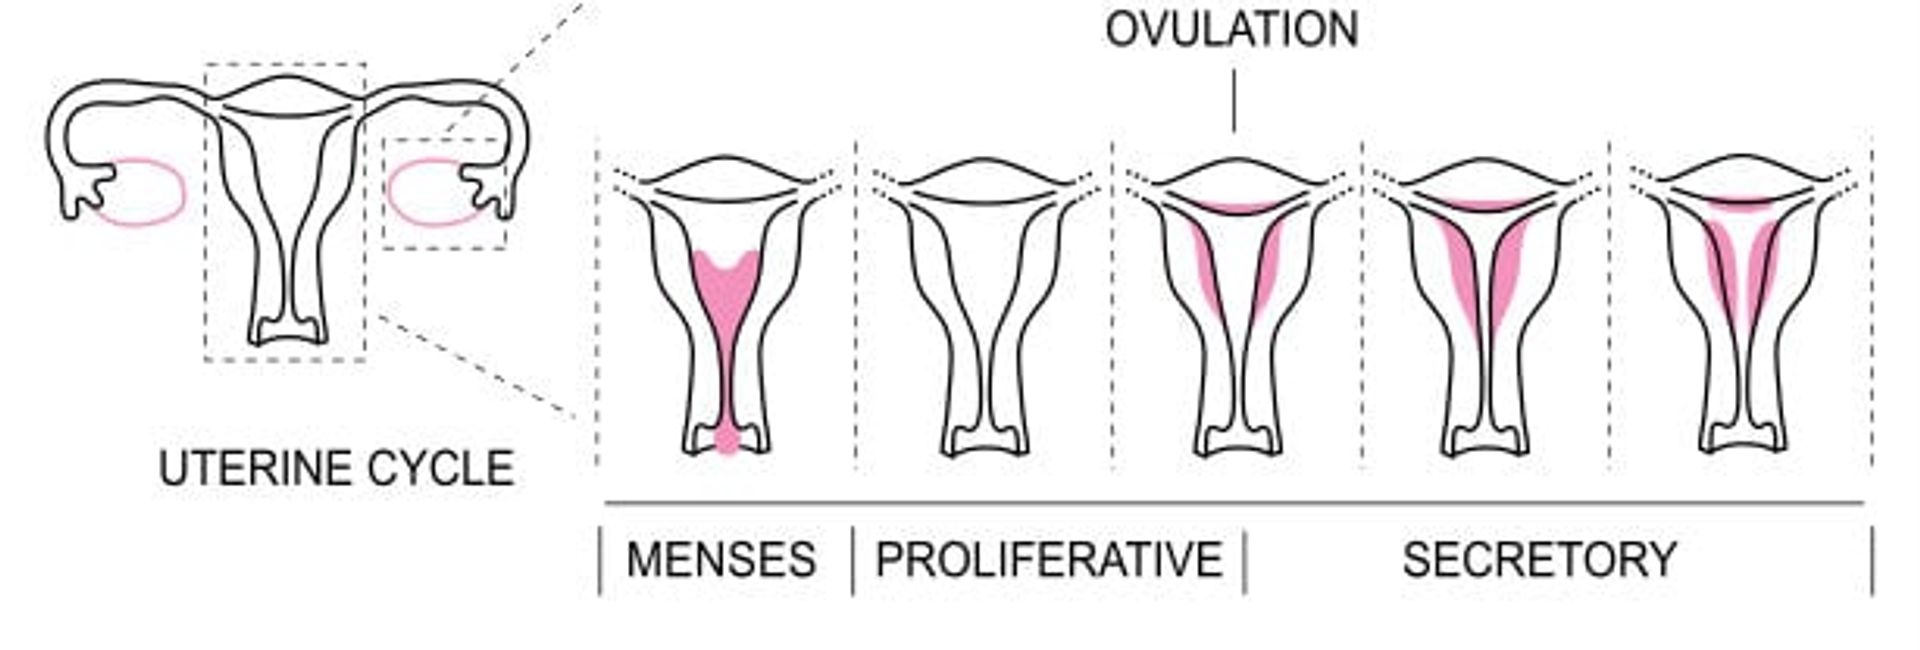 MenstrualCycle2_en